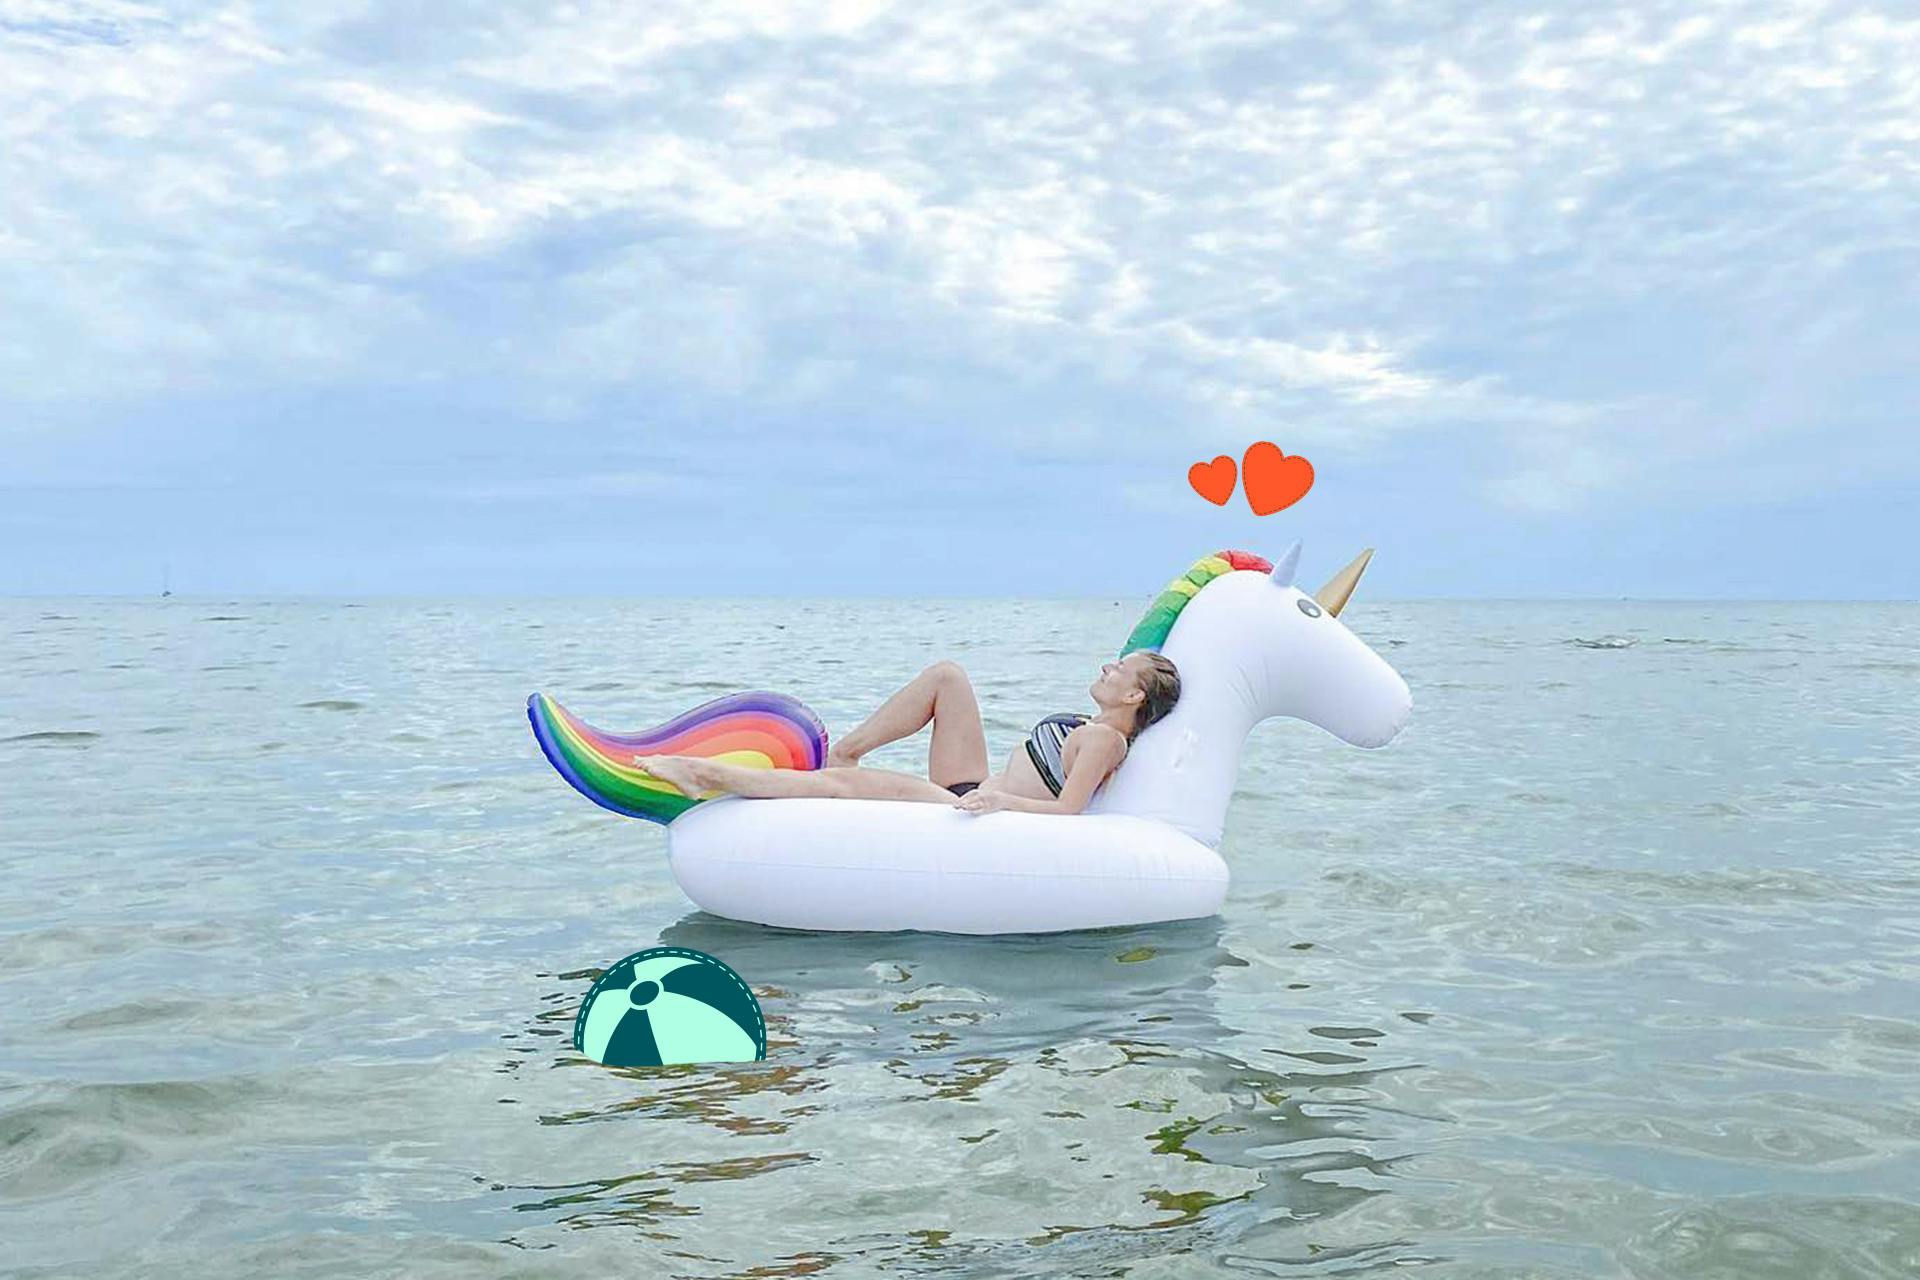 kvinne slapper av i havet på en oppblåsbar badedrakt i form av en enhjørning